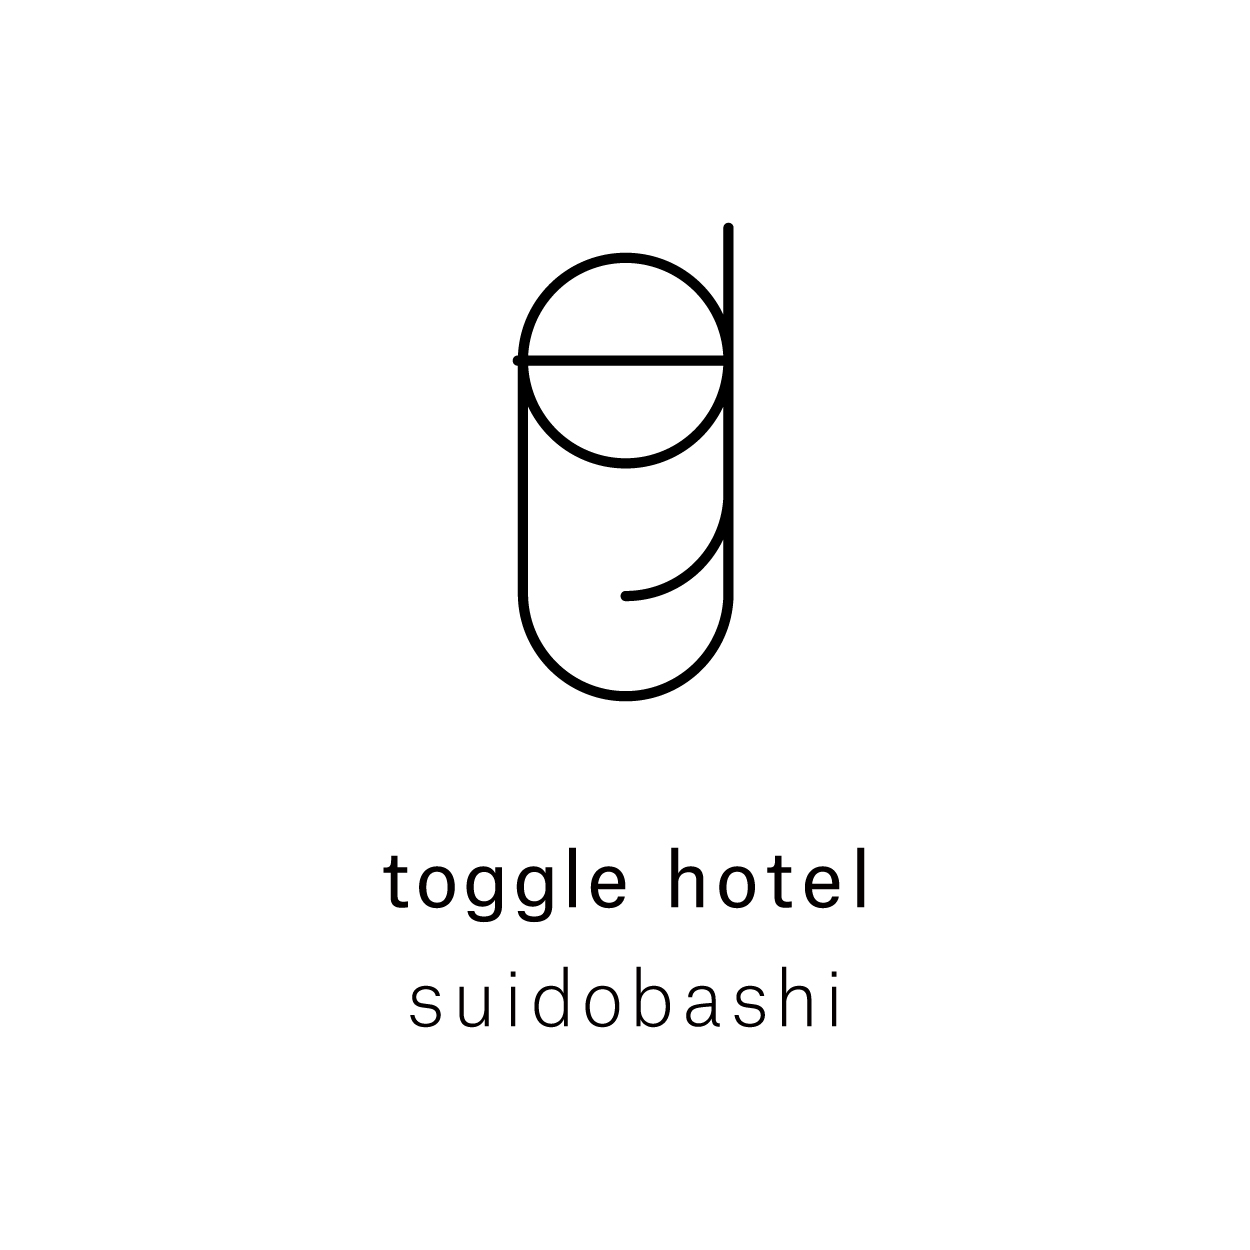 toggle hotel